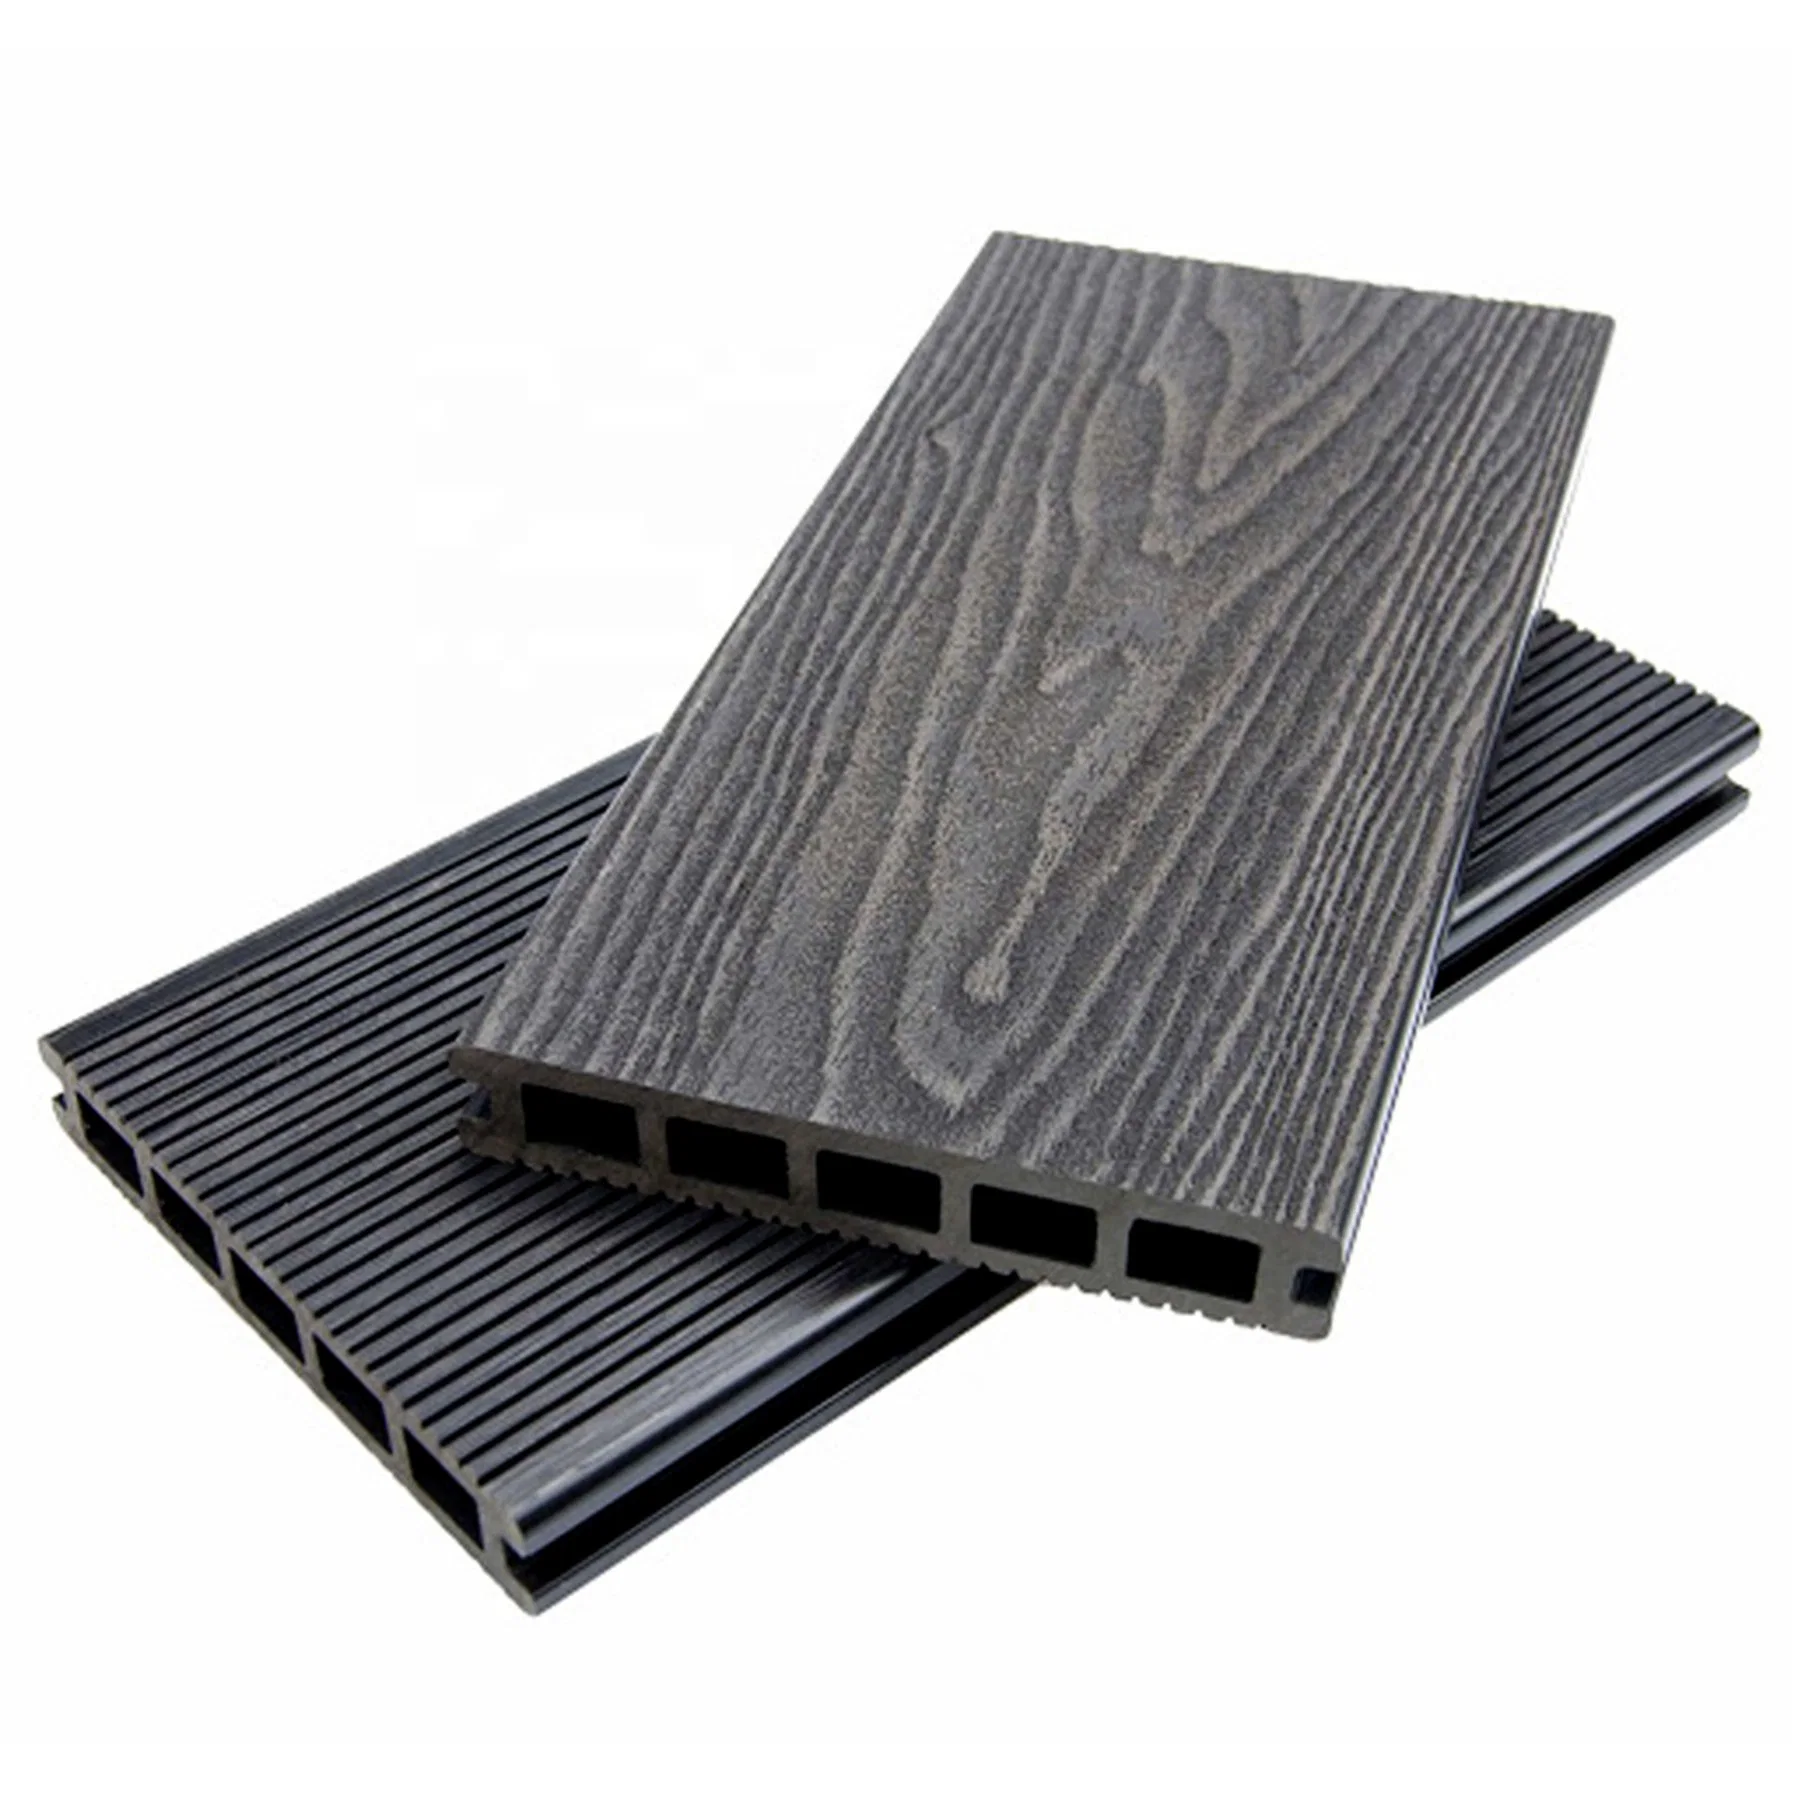 Vente à chaud Bamboo Wood Plastic composite Deck sol en composite écologique